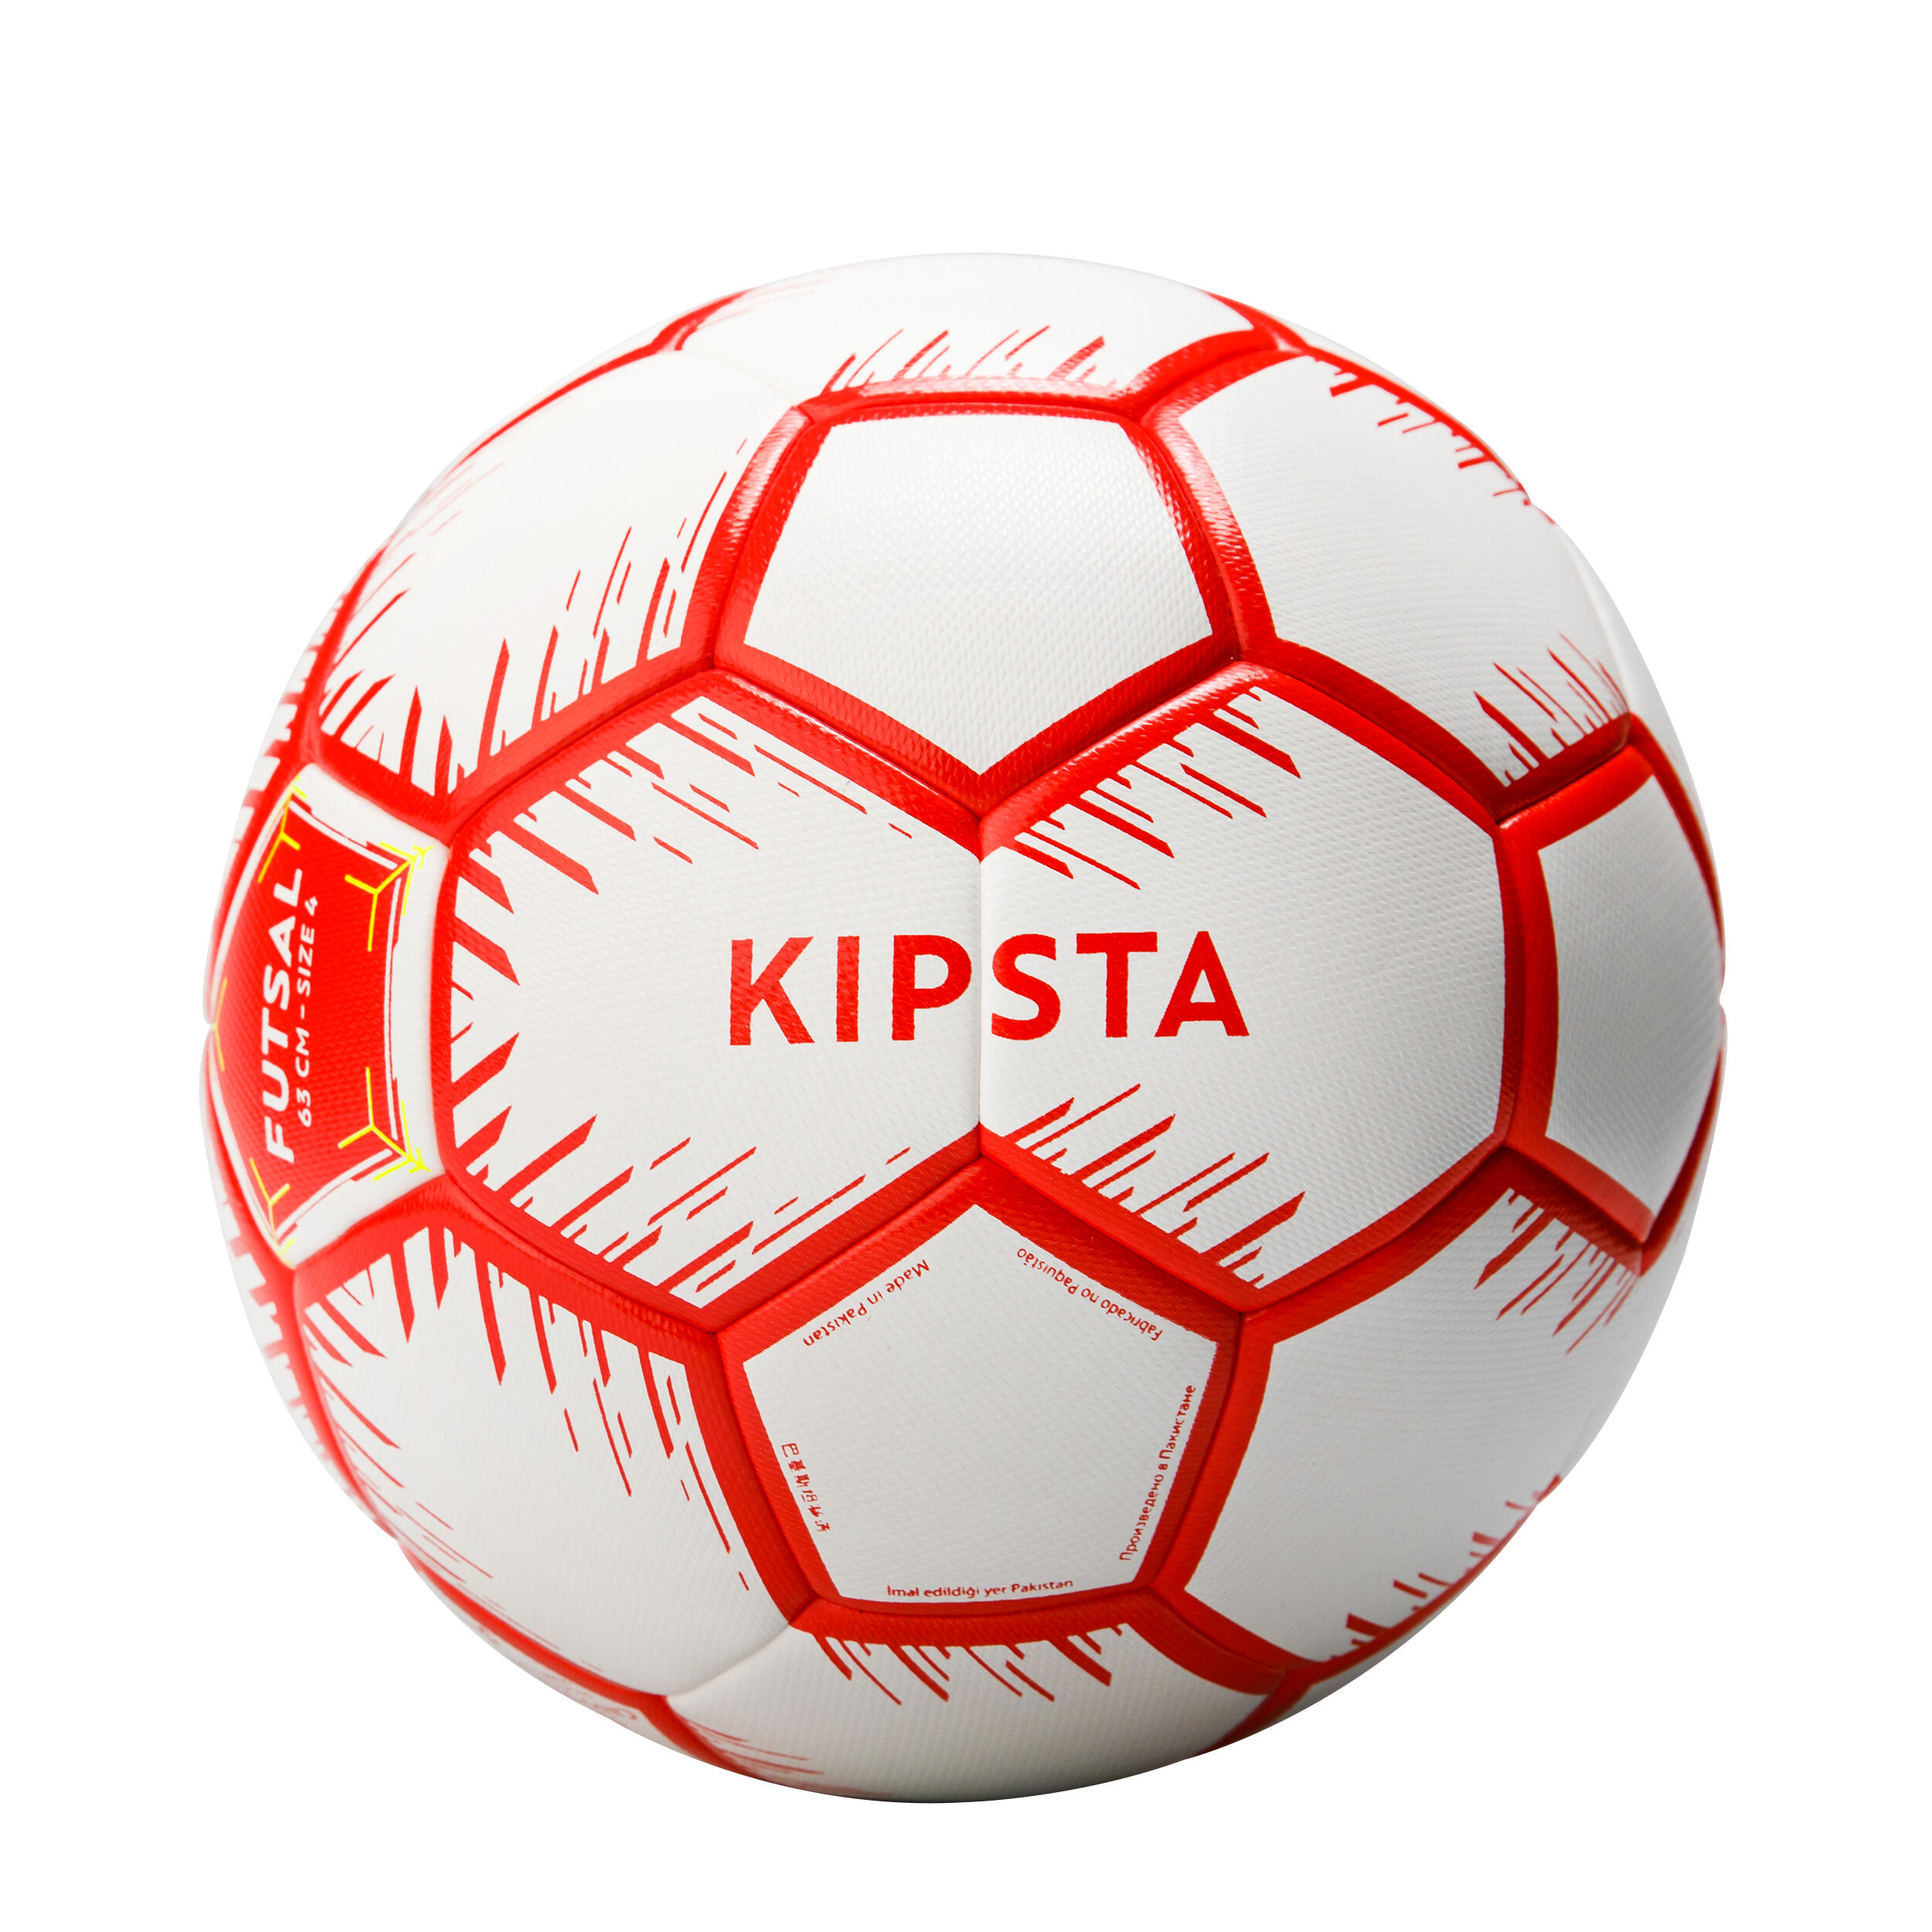 KIPSTA Futsalová lopta veľkosť 4 (obvod 63 cm) červeno-biela